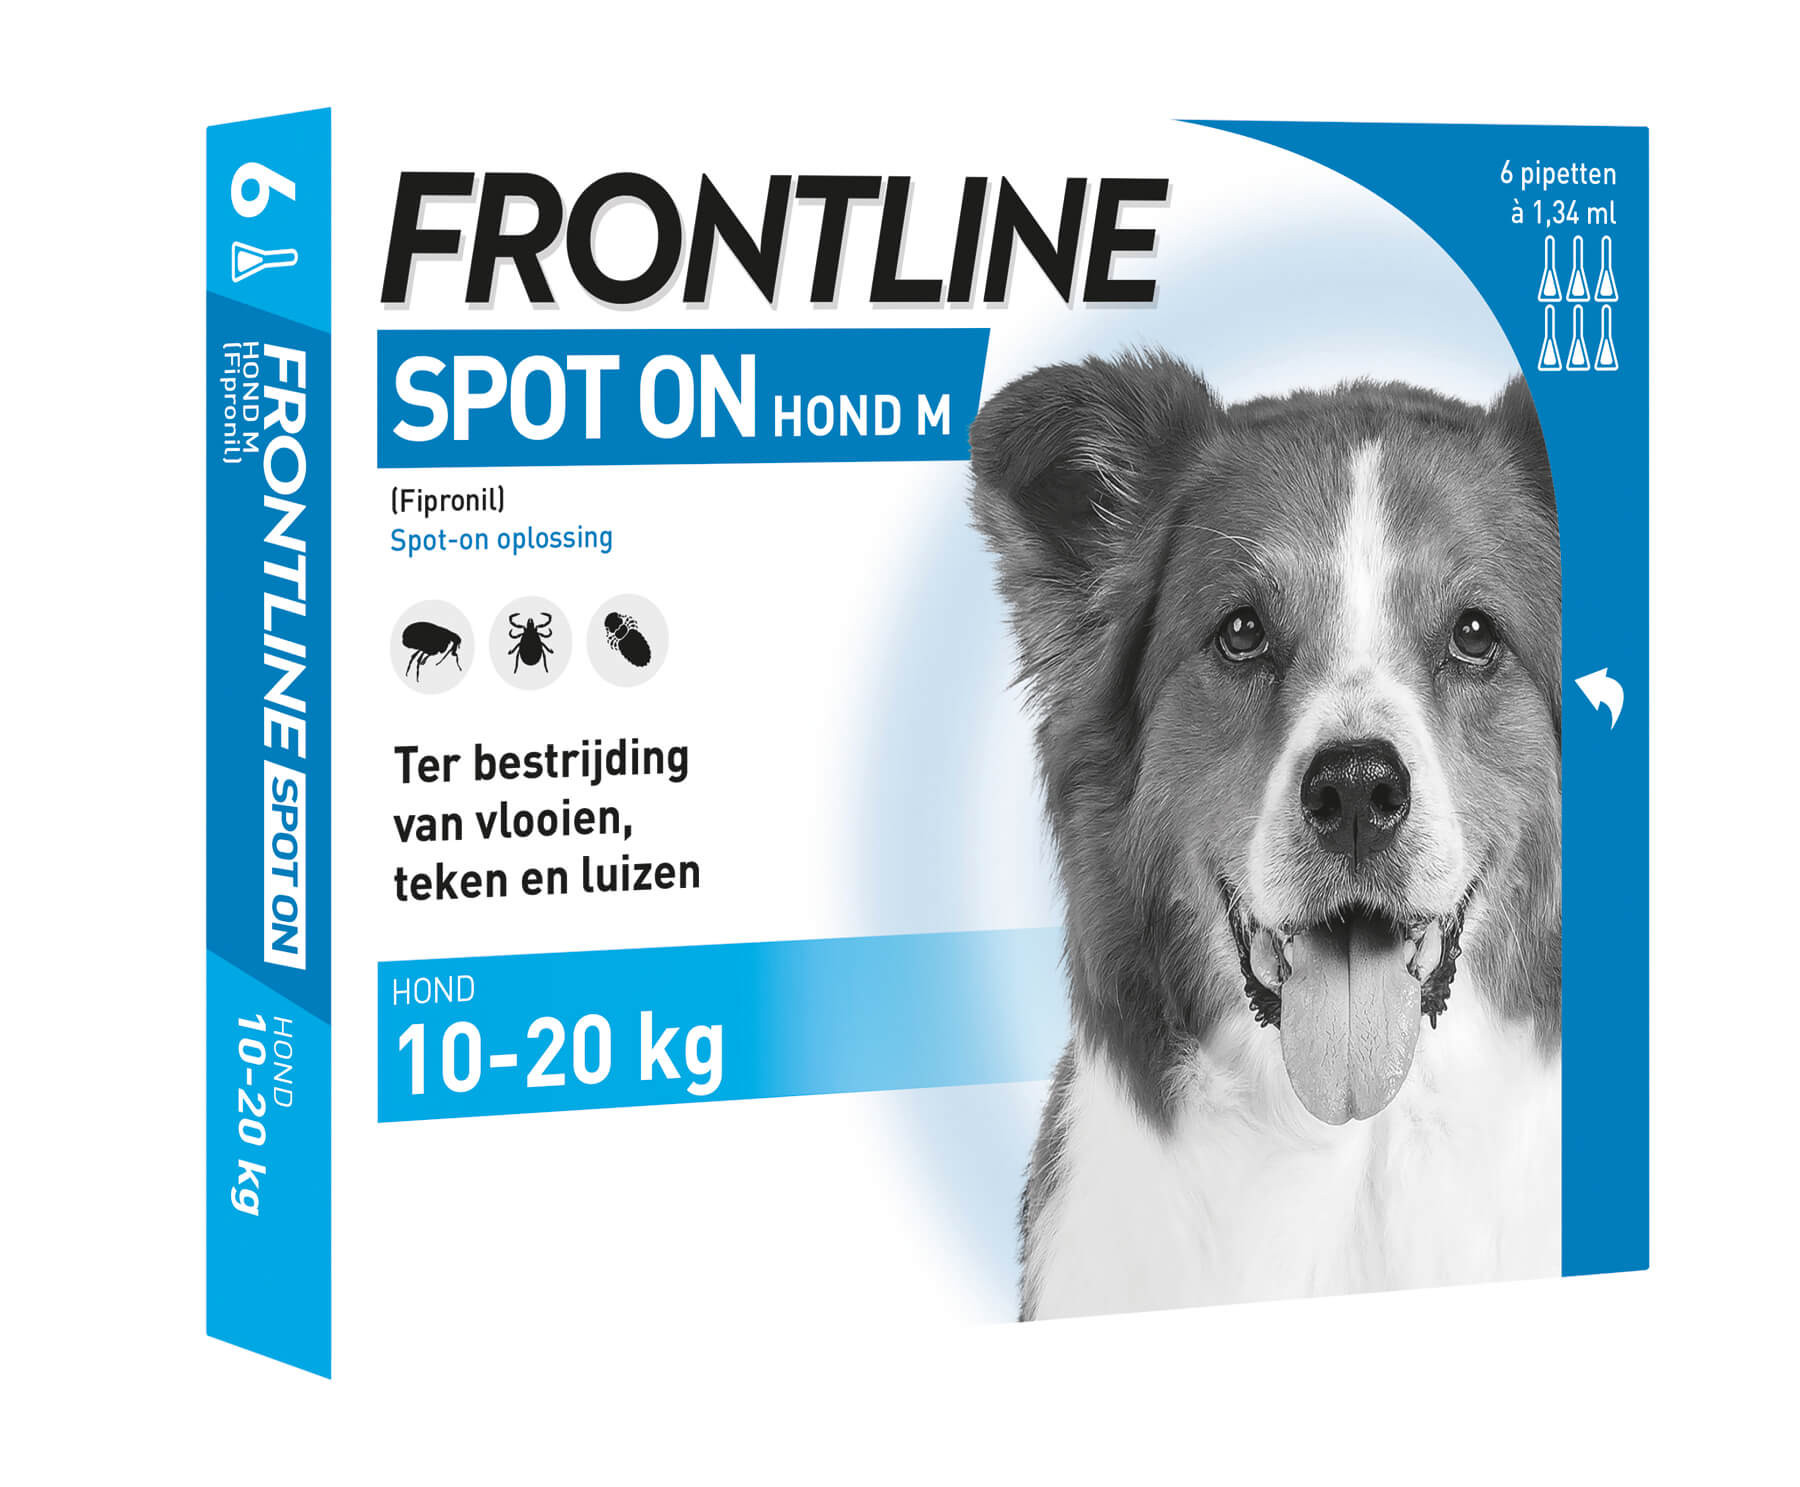 Frontline Spot on Hond M 6 pipetten